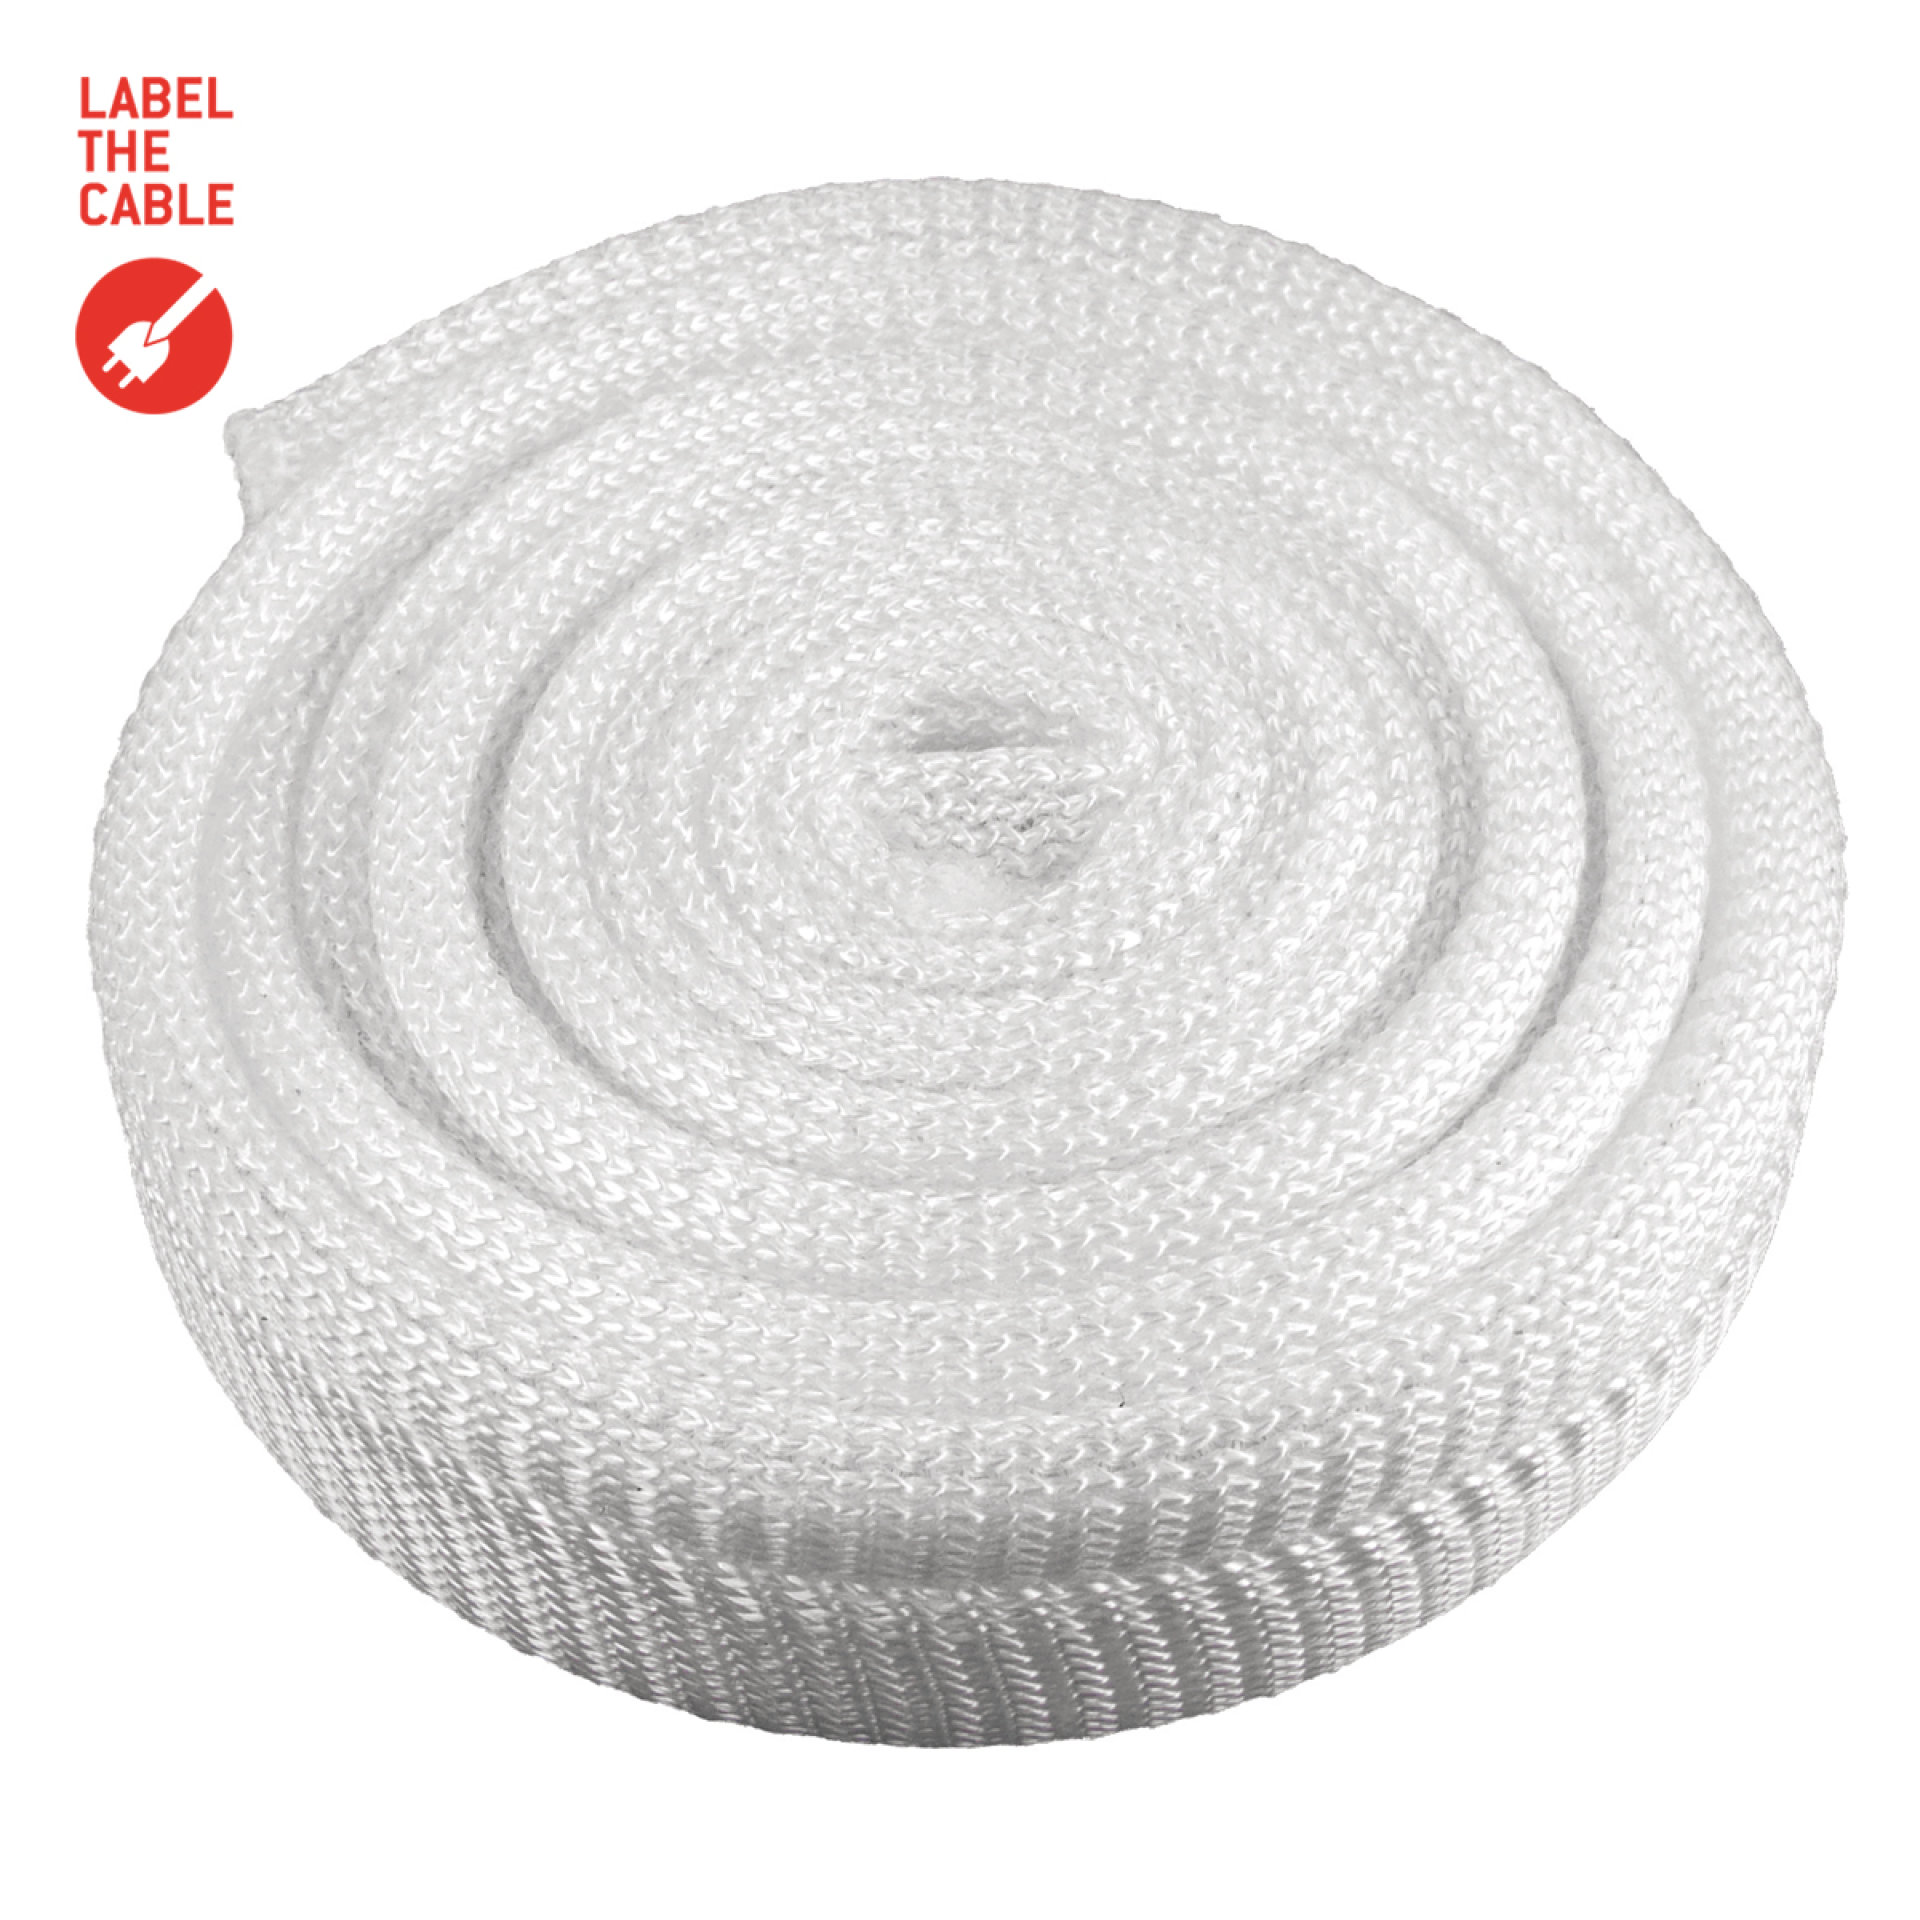 LTC CABLE TUBE, soft polyester tube diameter 2.5 - 4cm 2m white